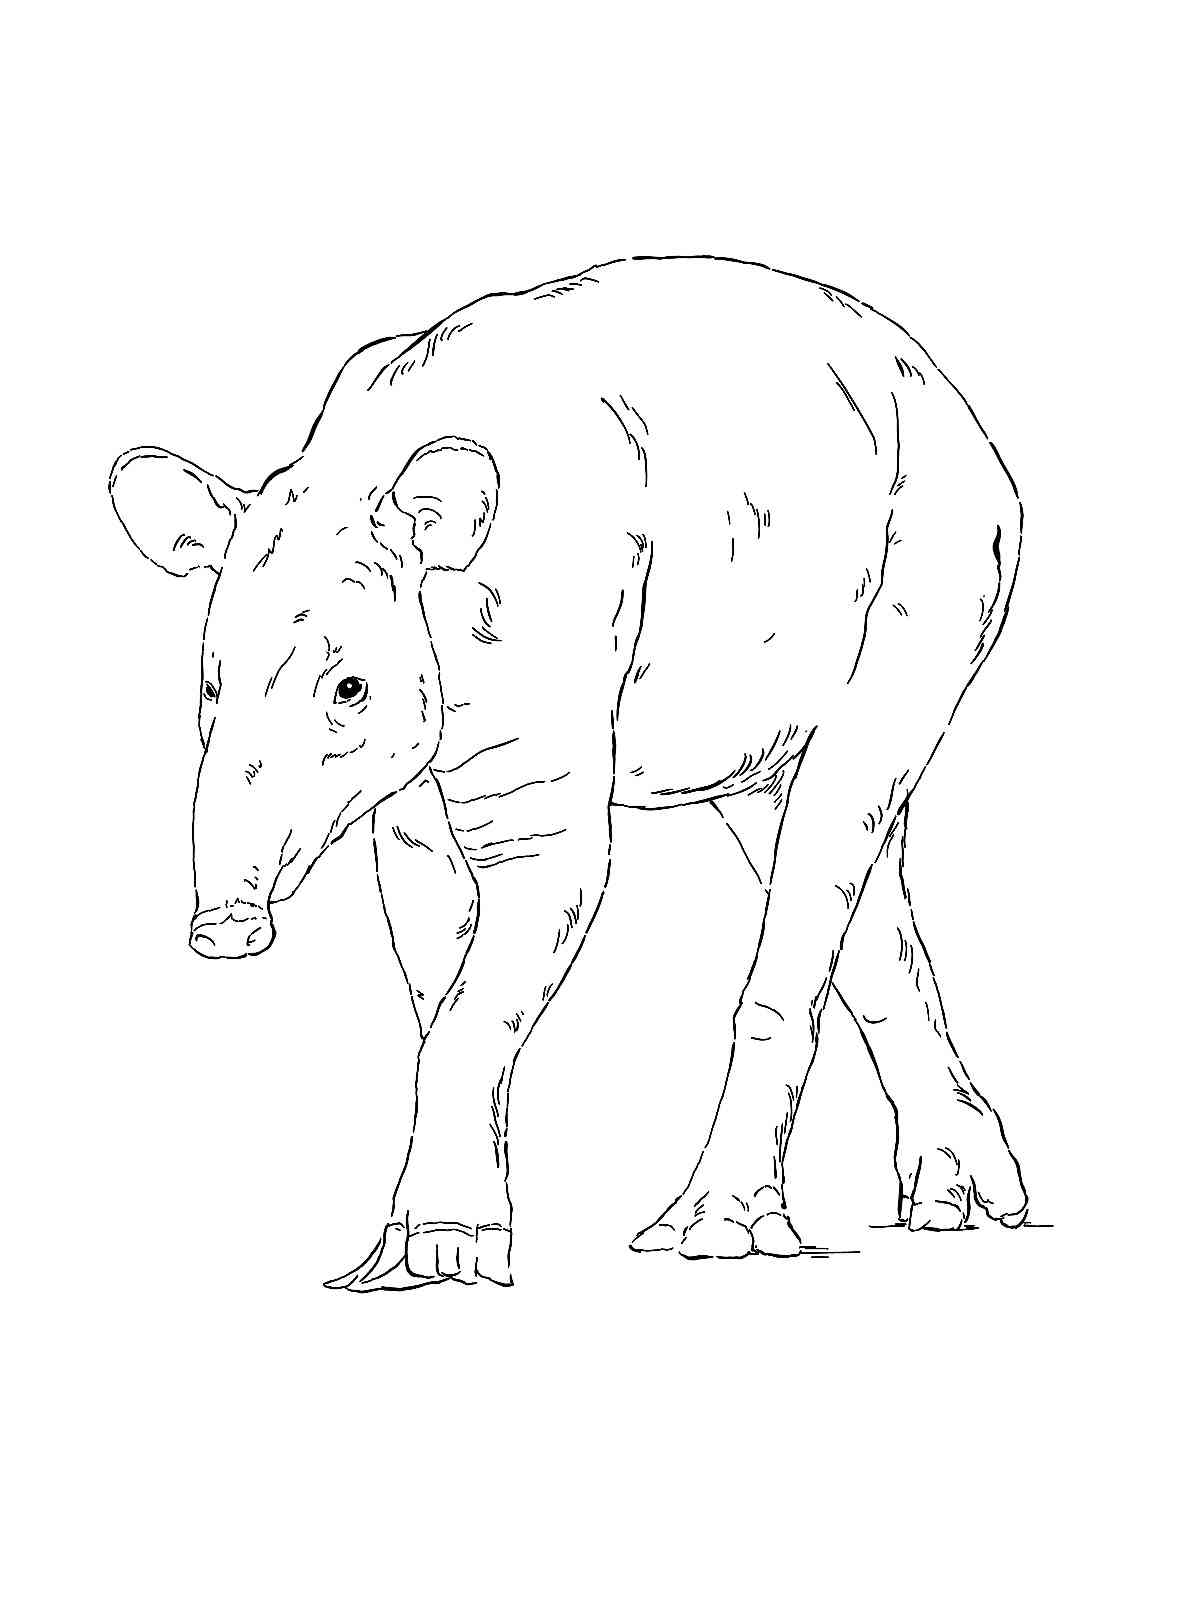 Mountain Tapir coloring page